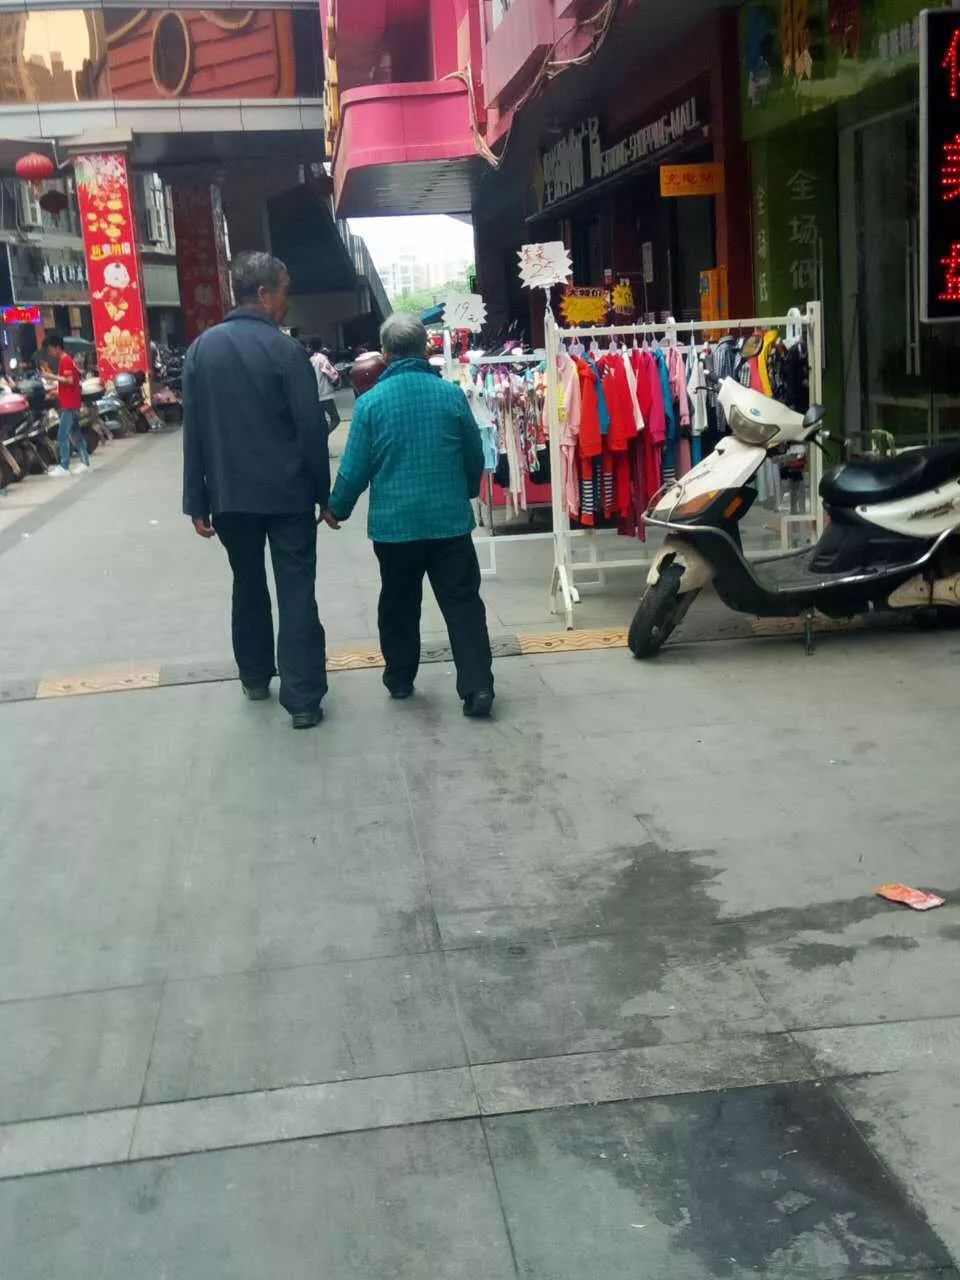 在南康广场天街拍摄了这样一张照片,两个老人手牵手逛街,老爷爷还